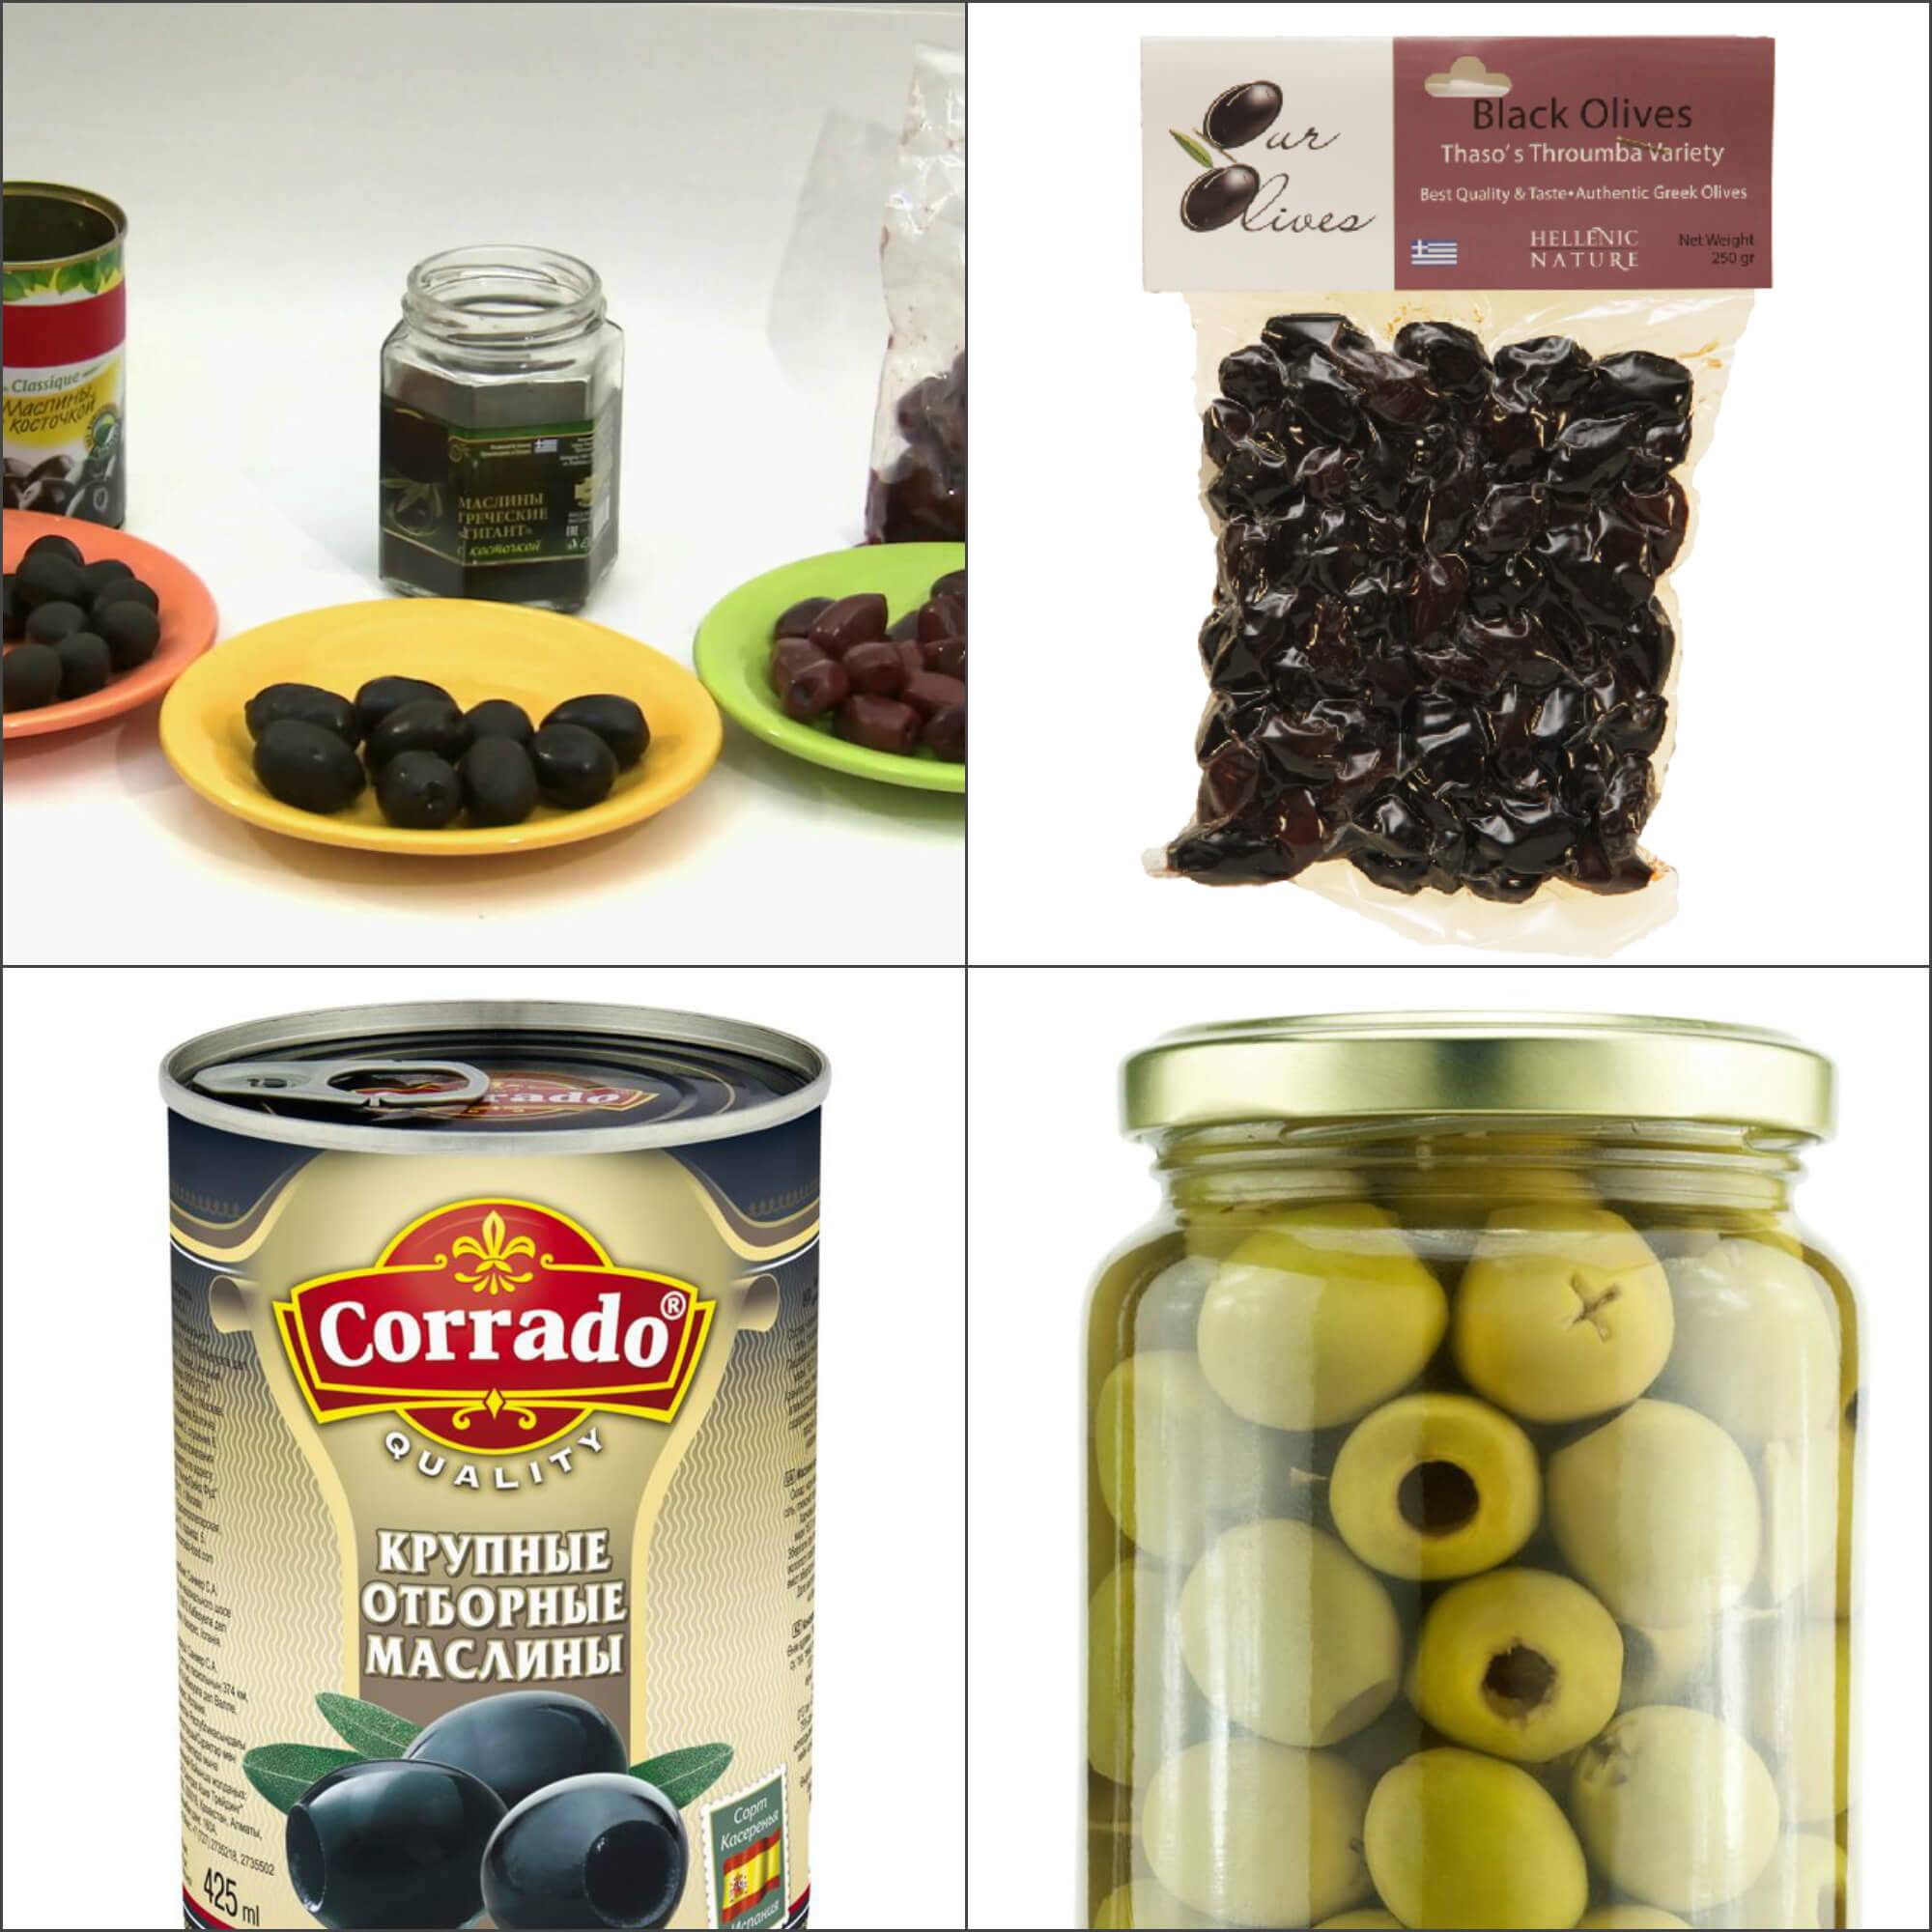 Натуральные или крашенные: в чем разница между консервированными оливками и маслинами?